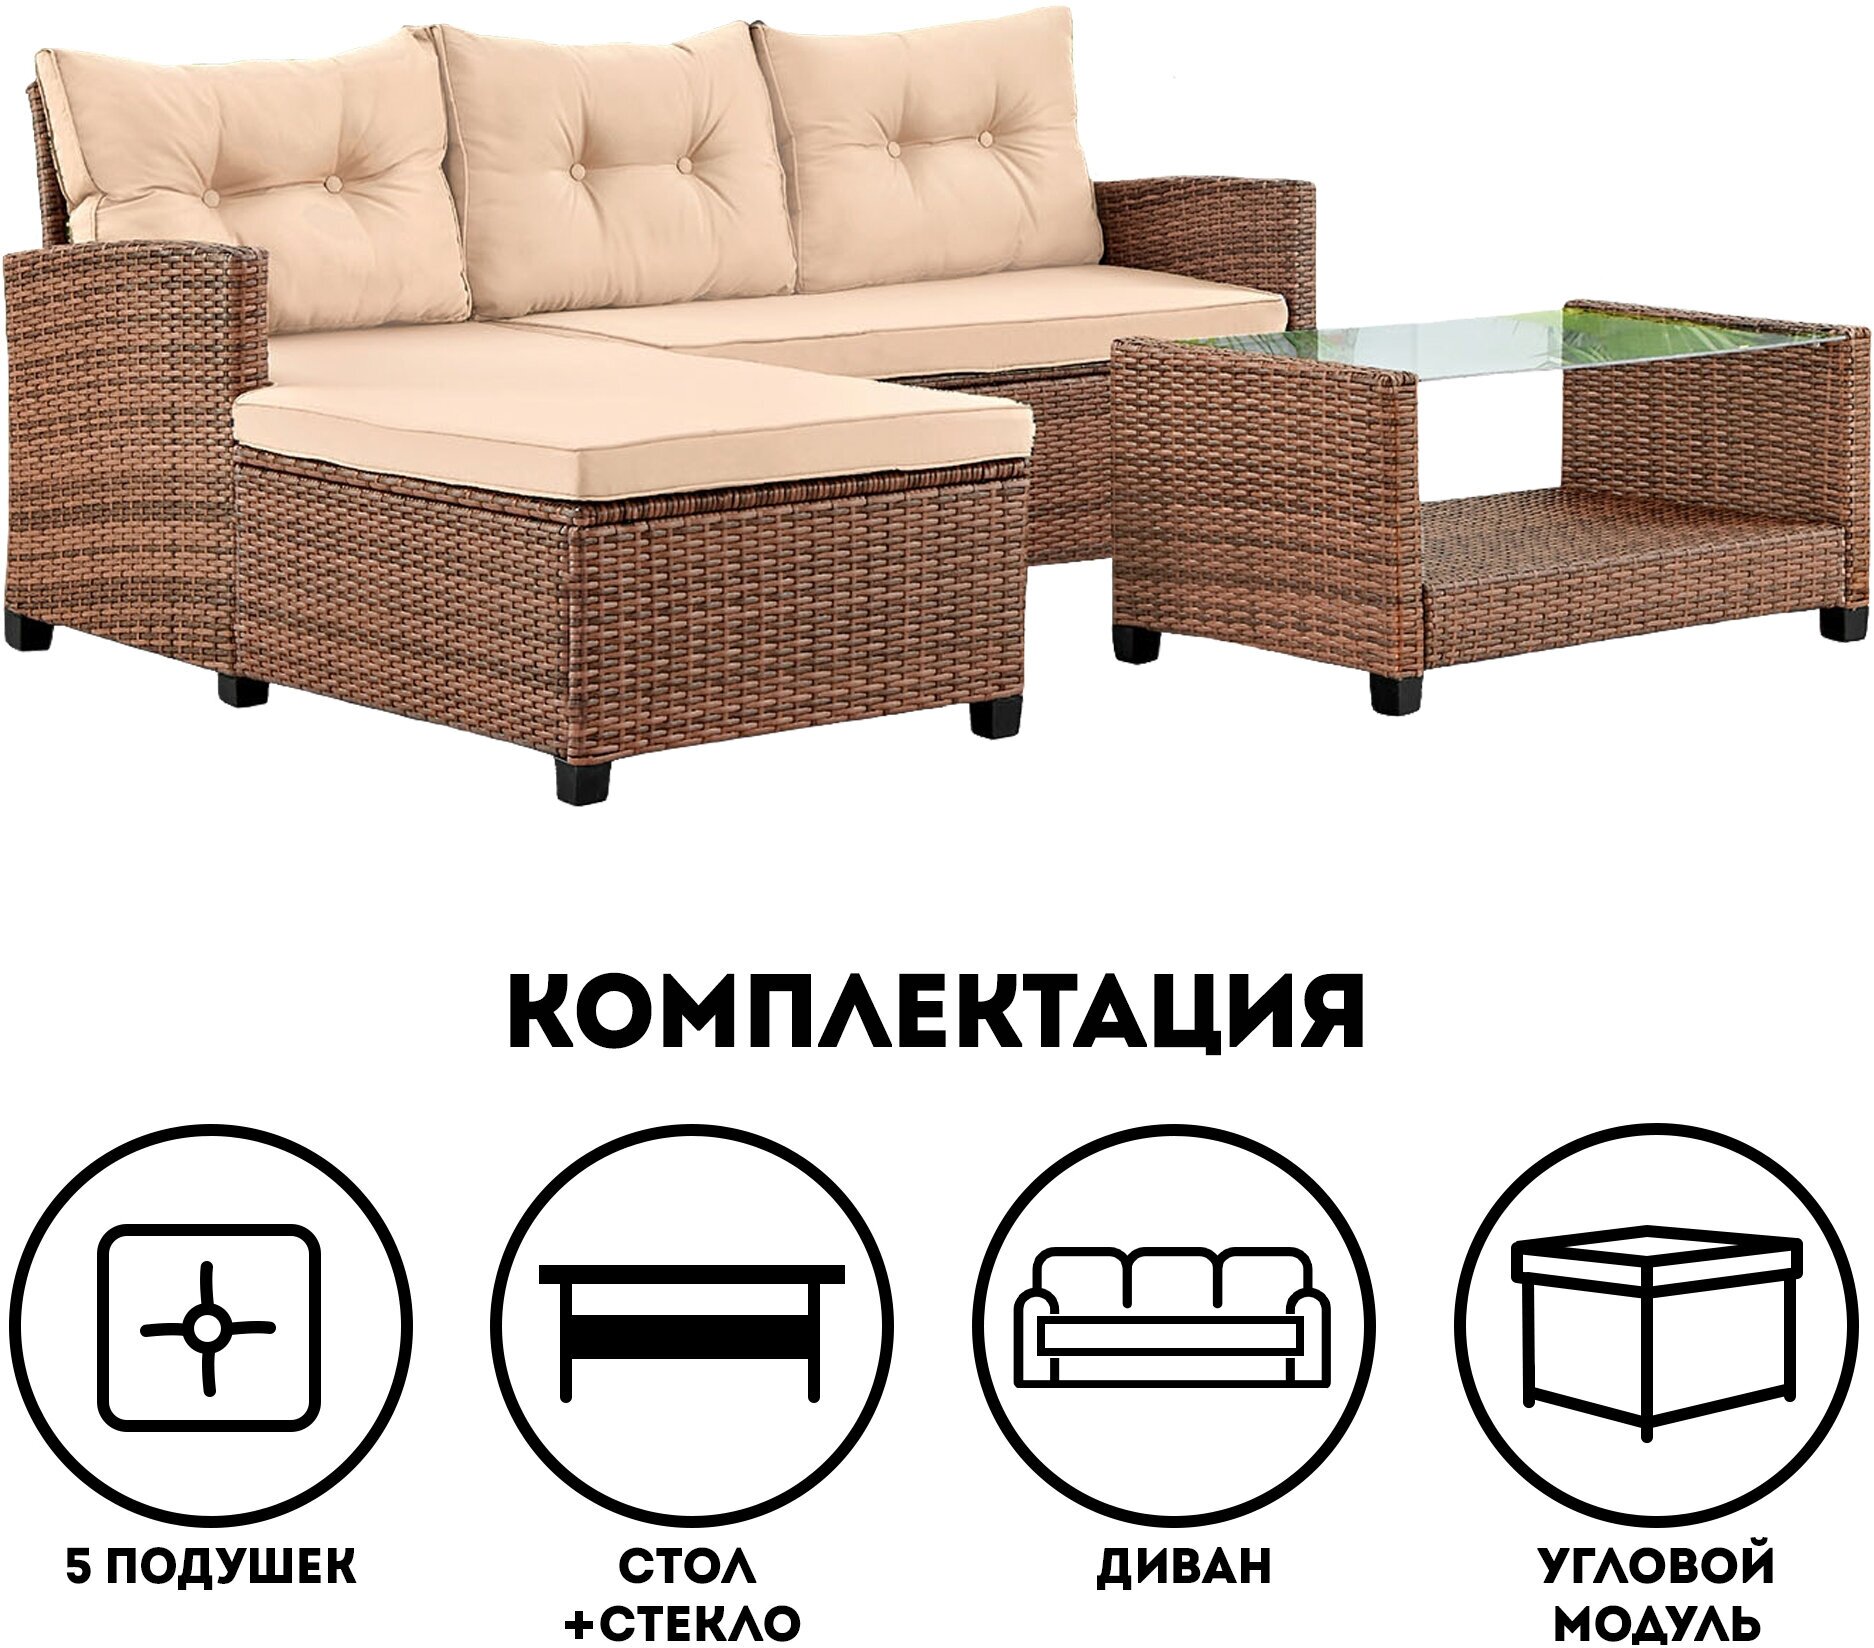 Комплект мебели из искусственного ротанга Софитель (Sofitel), цвет: капучино, подушки: бежевые - фотография № 4